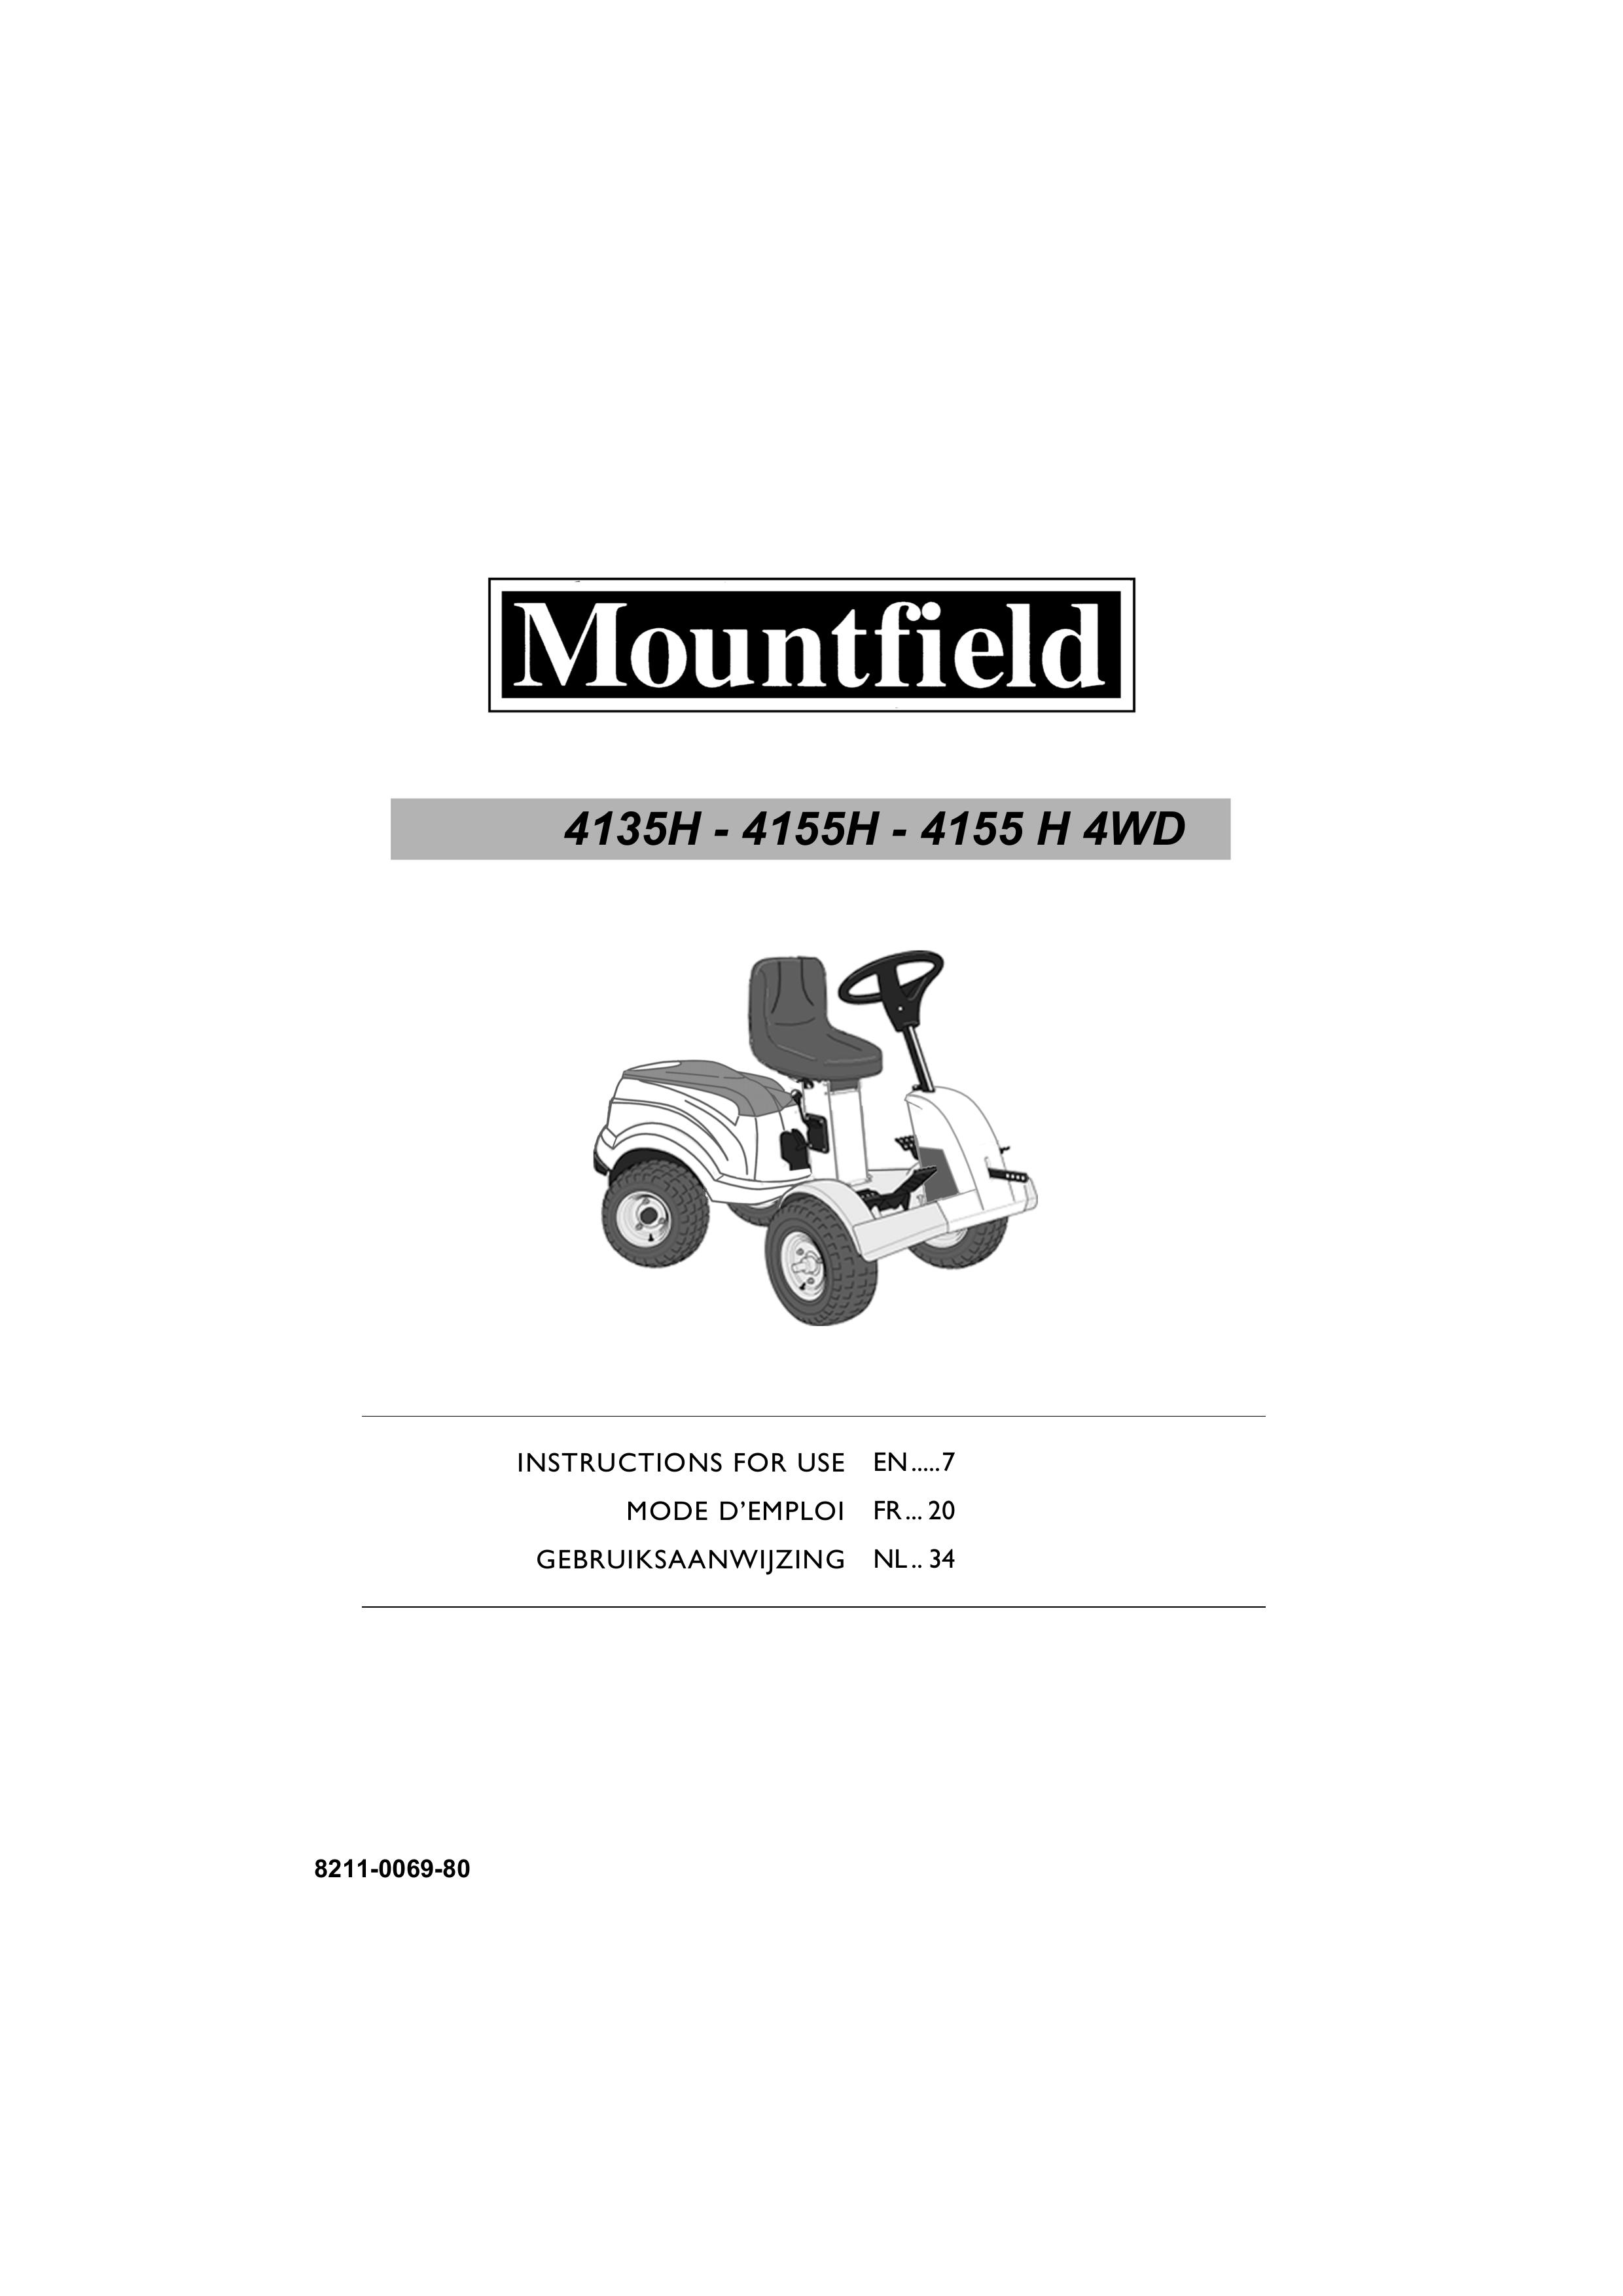 Mountfield 4155 H 4WD Lawn Mower User Manual